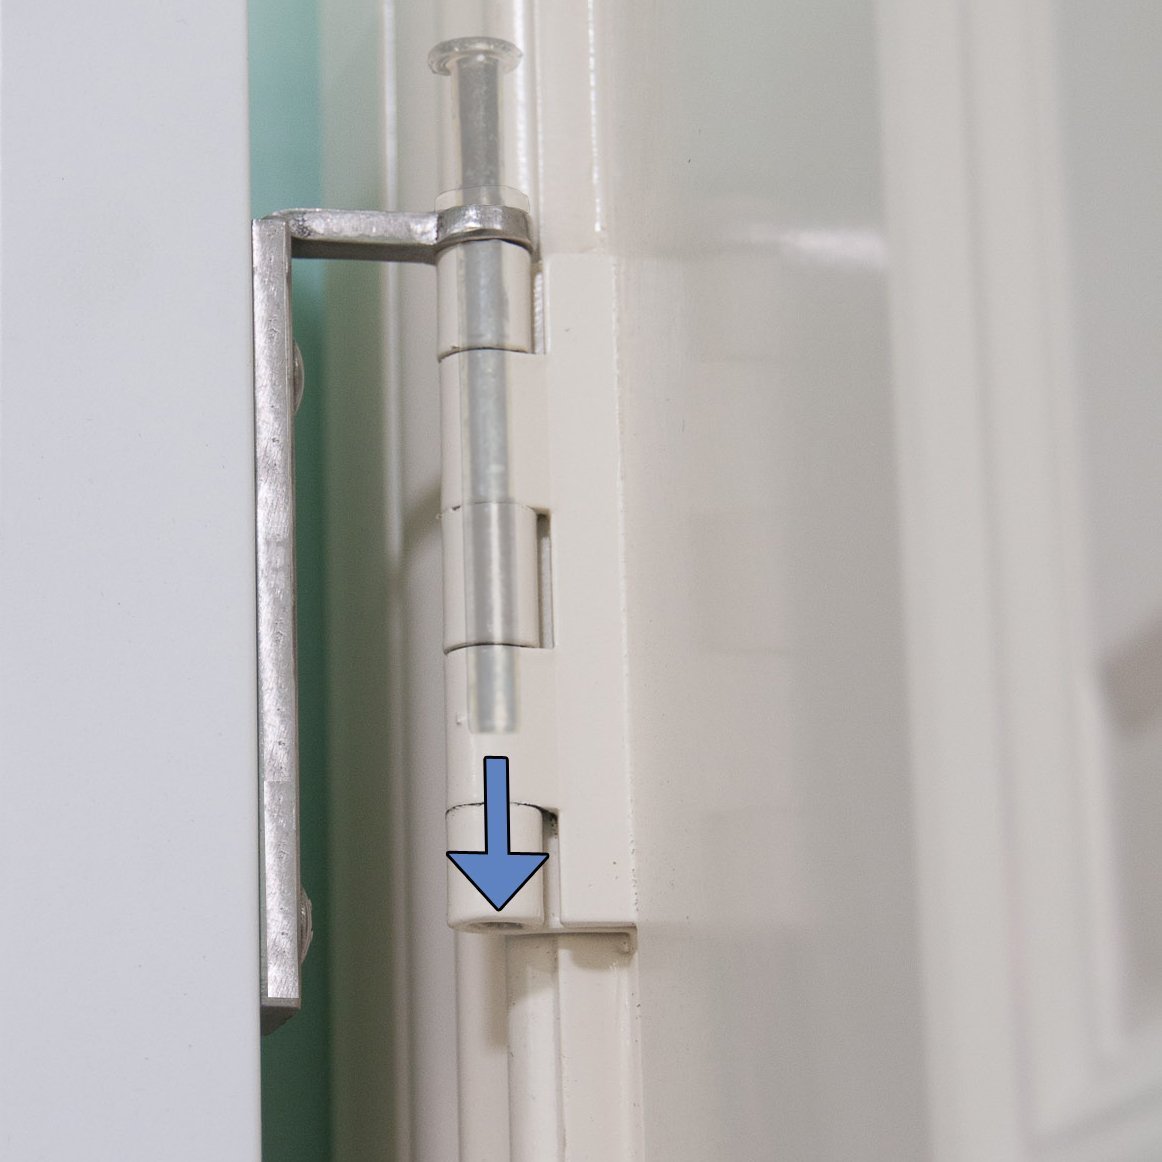 Related cabidor deluxe mirrored behind the door adjustable medicine bathroom kitchen storage cabinet